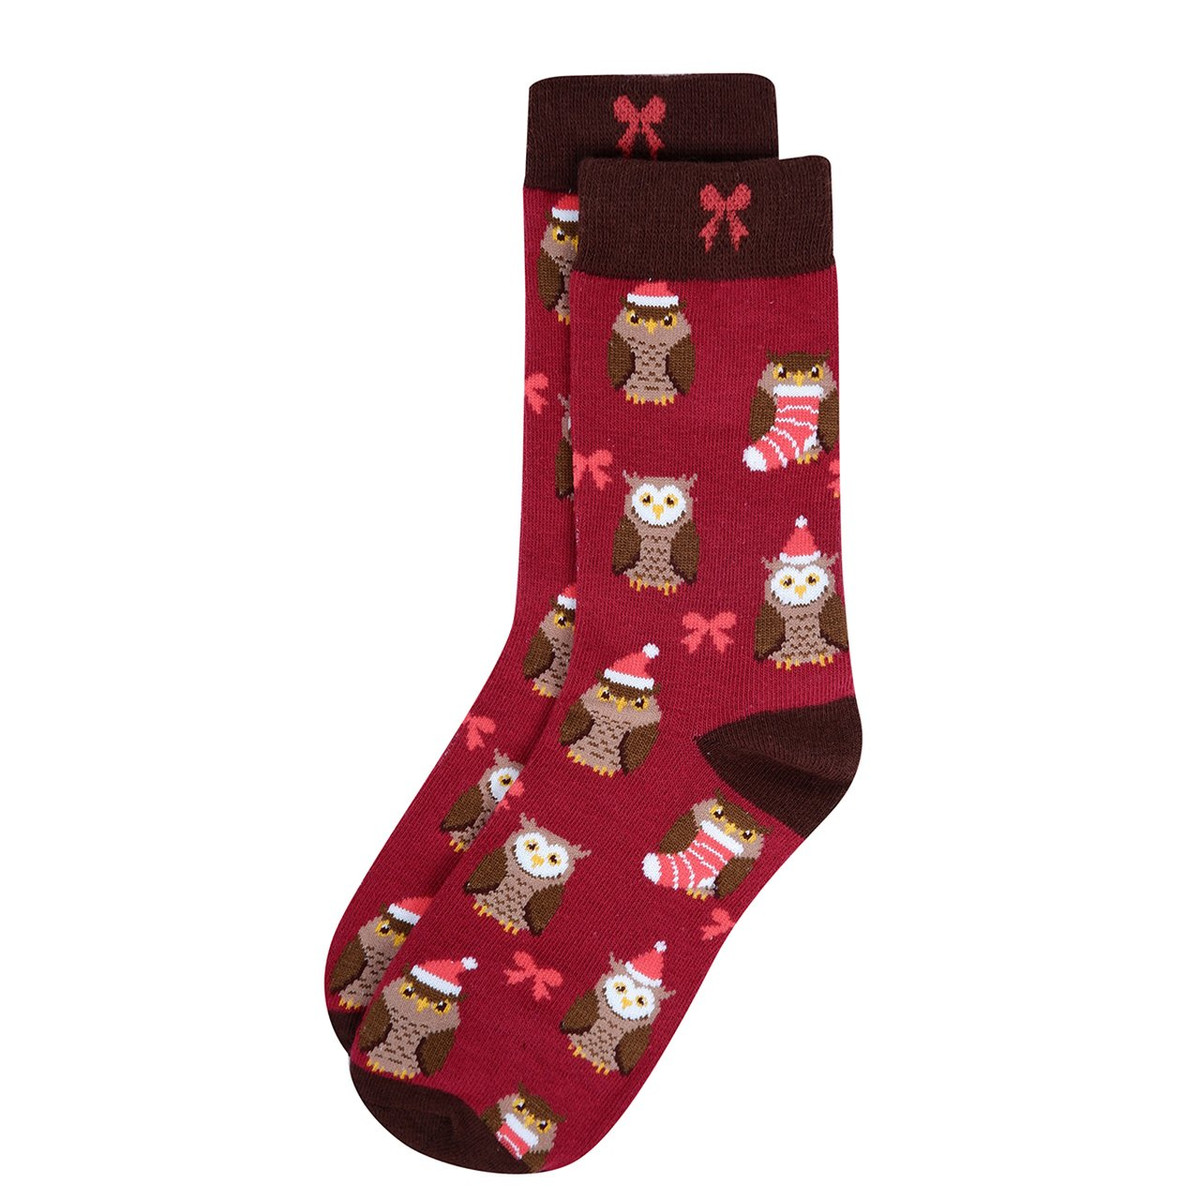 Women's Owl Christmas Crew Novelty Socks